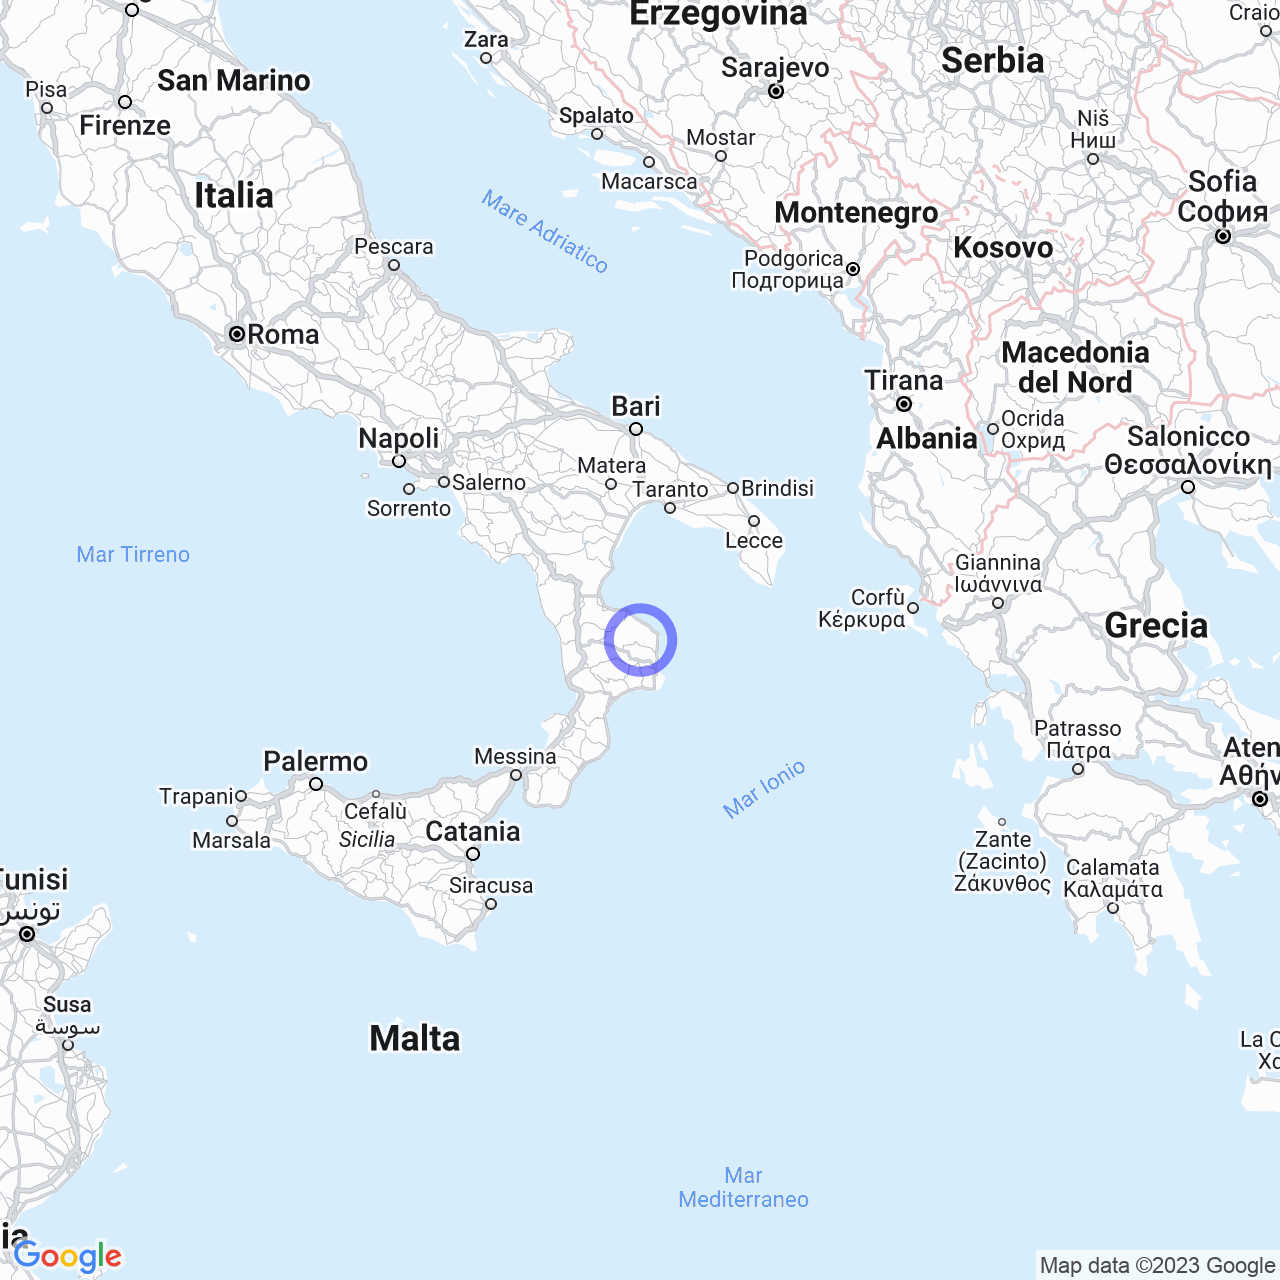 Provincia di Crotone: Mare, Monti e Storia in Calabria